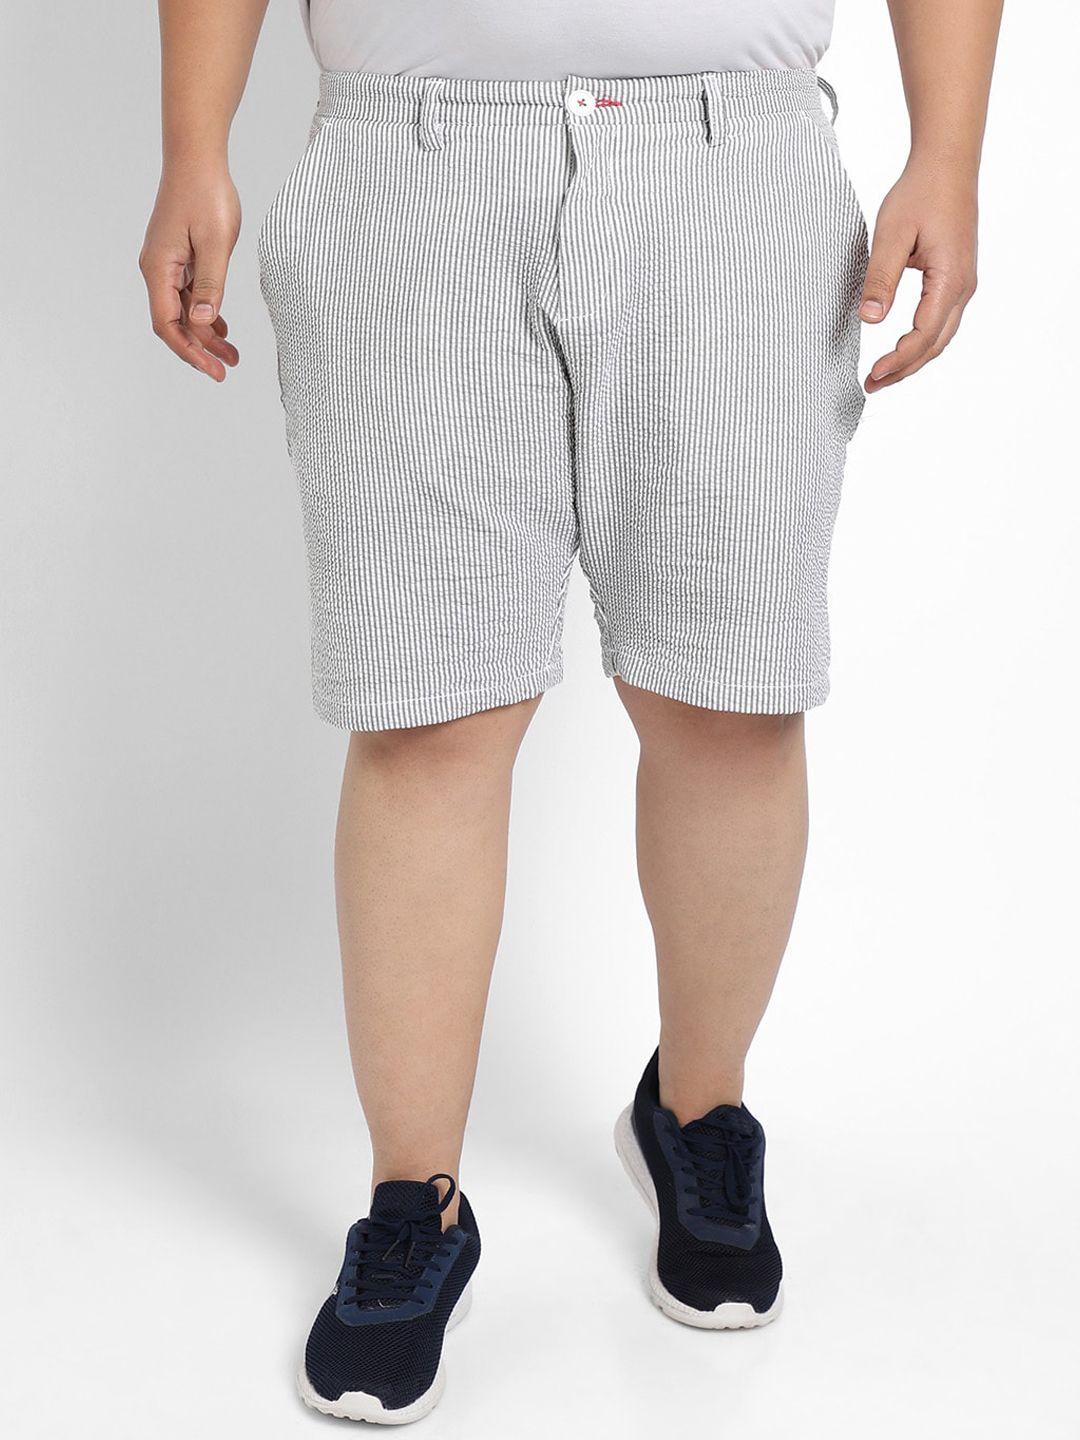 instafab plus men self design mid rise cotton seersucker shorts